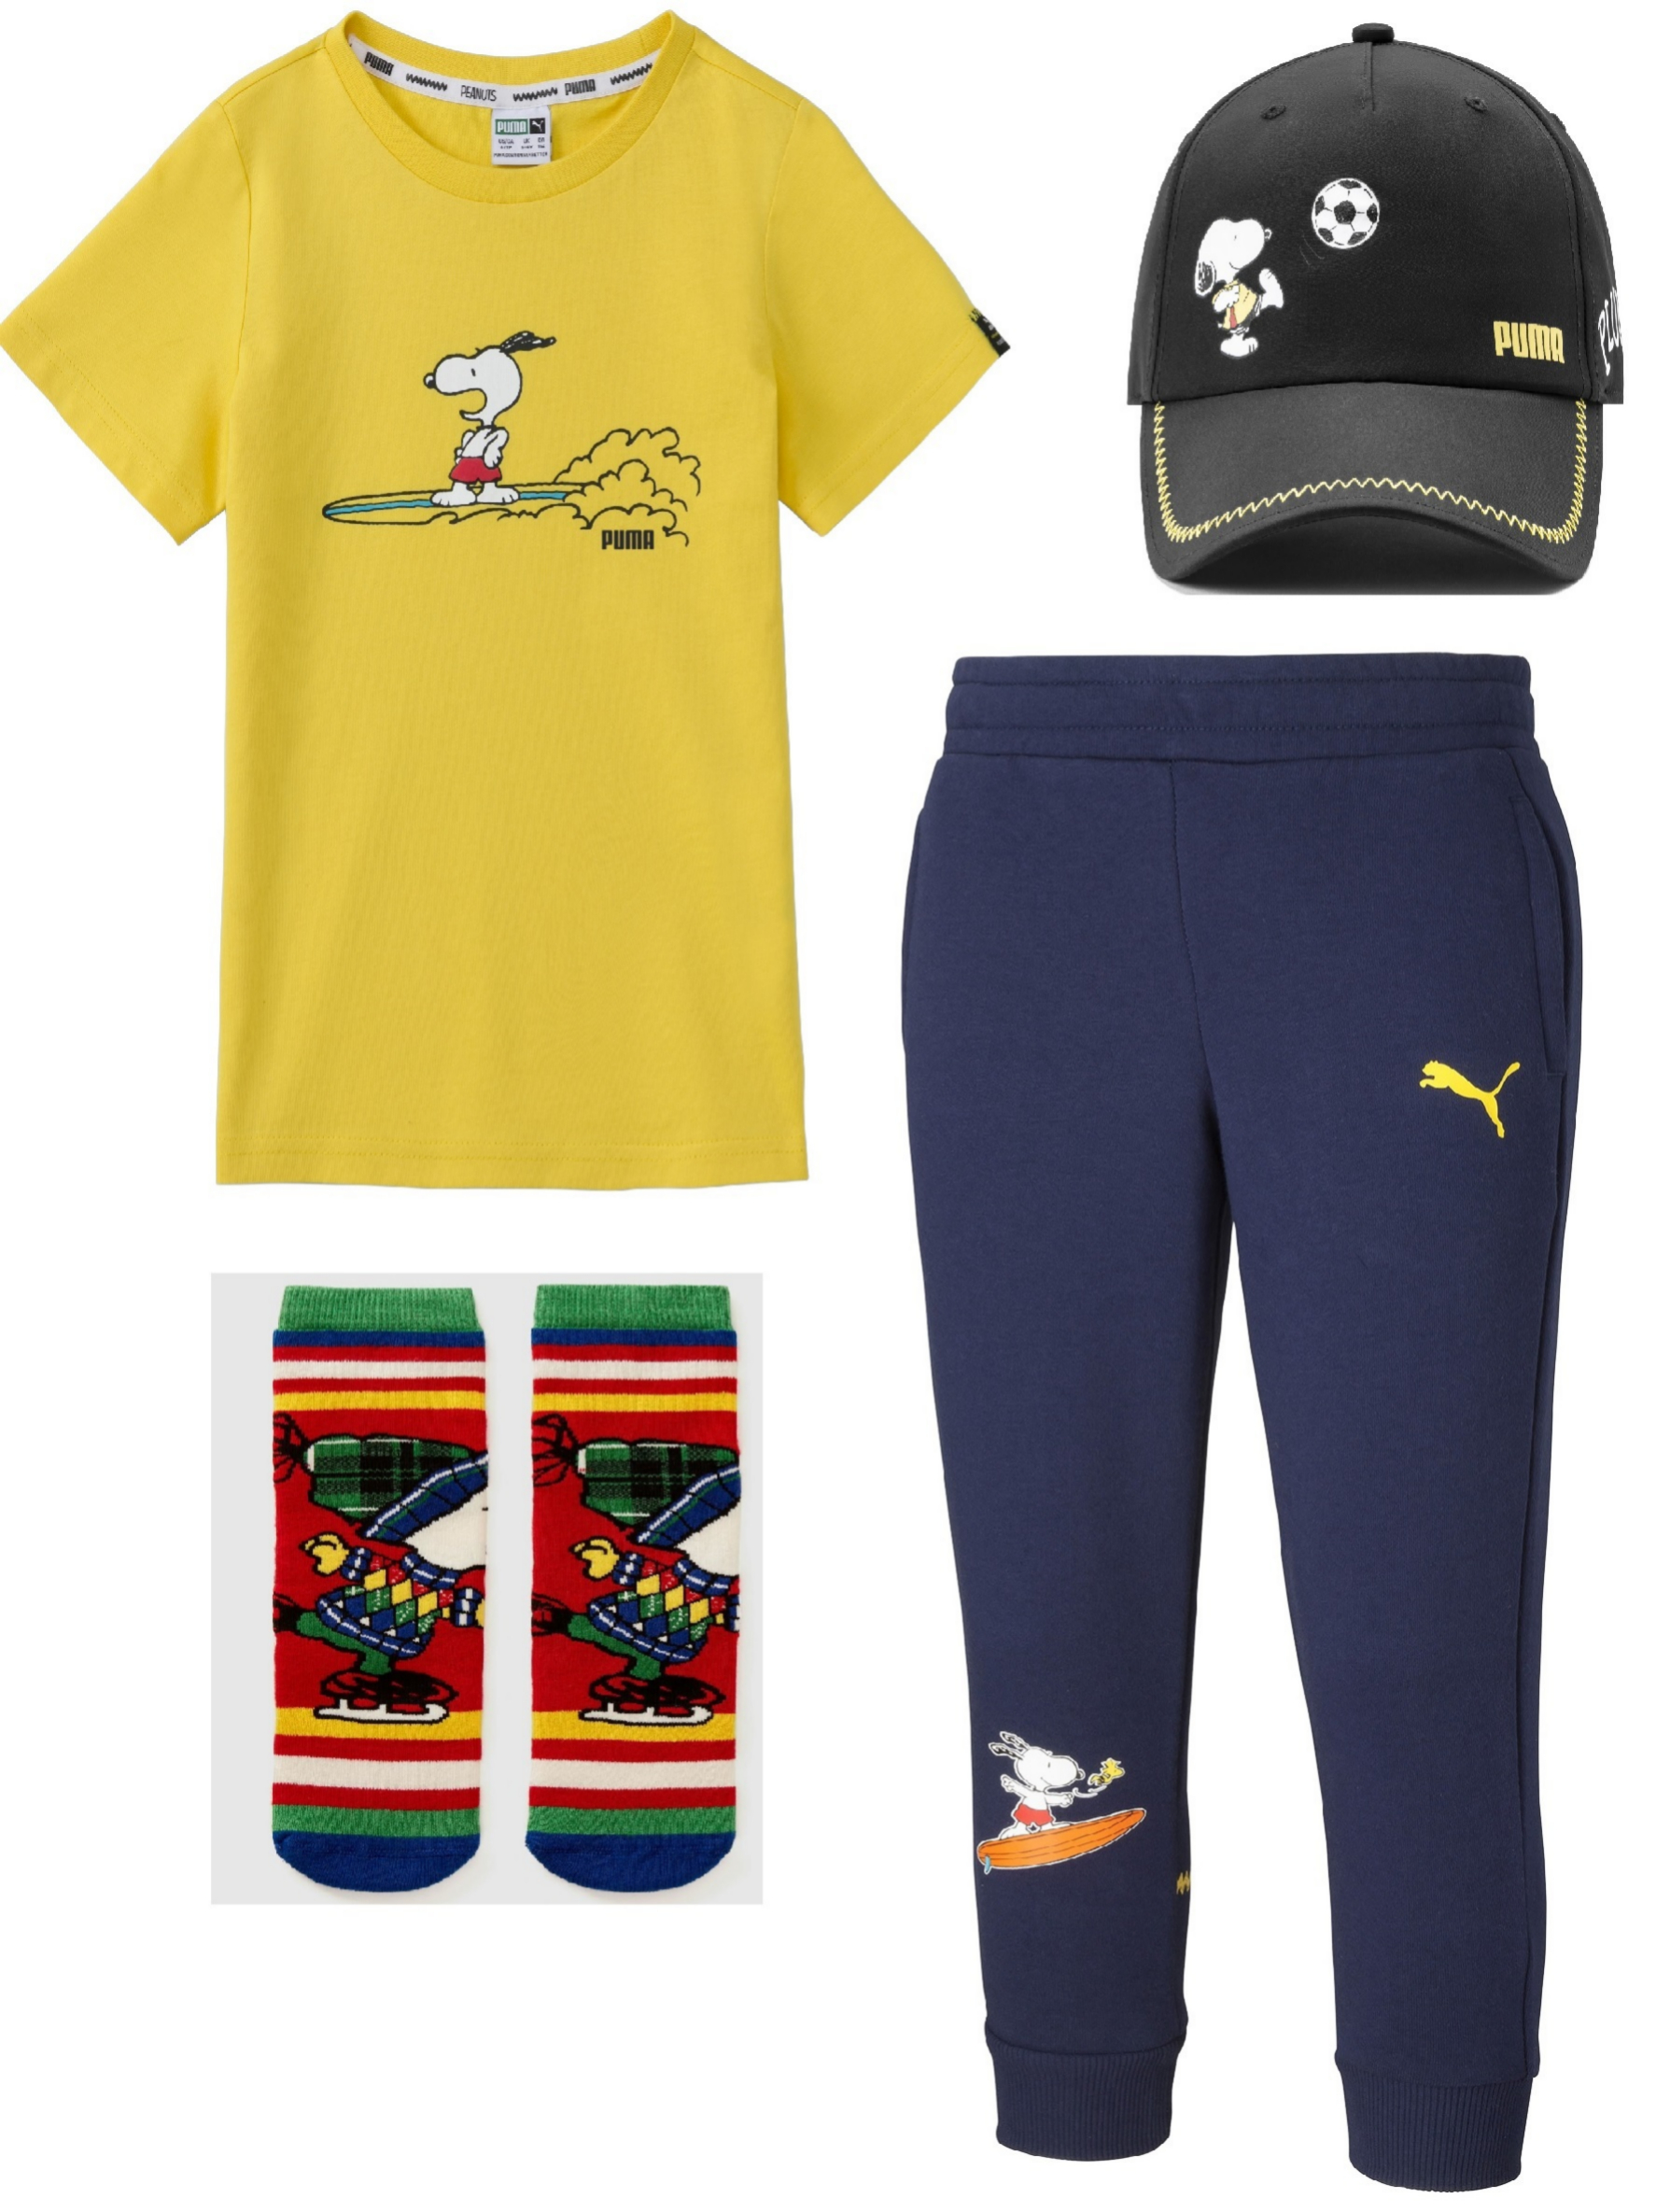 Camiseta, gorra y pantaln de chndal, de la nueva coleccin de Puma y calcetines (7,99 ), de Benetton.